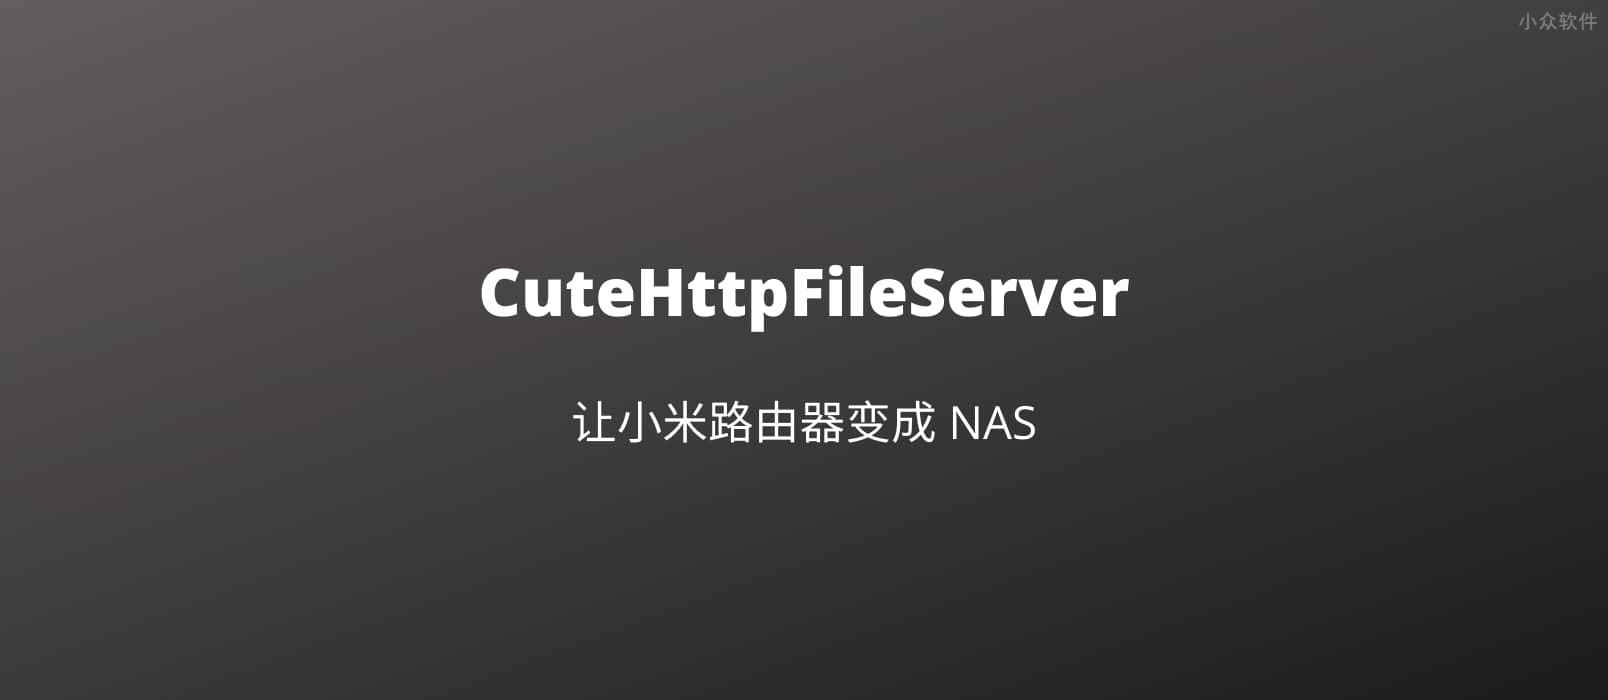 用 chfs 为小米路由器添加 NAS 文件共享功能，支持 HTTP、WebDAV 协议